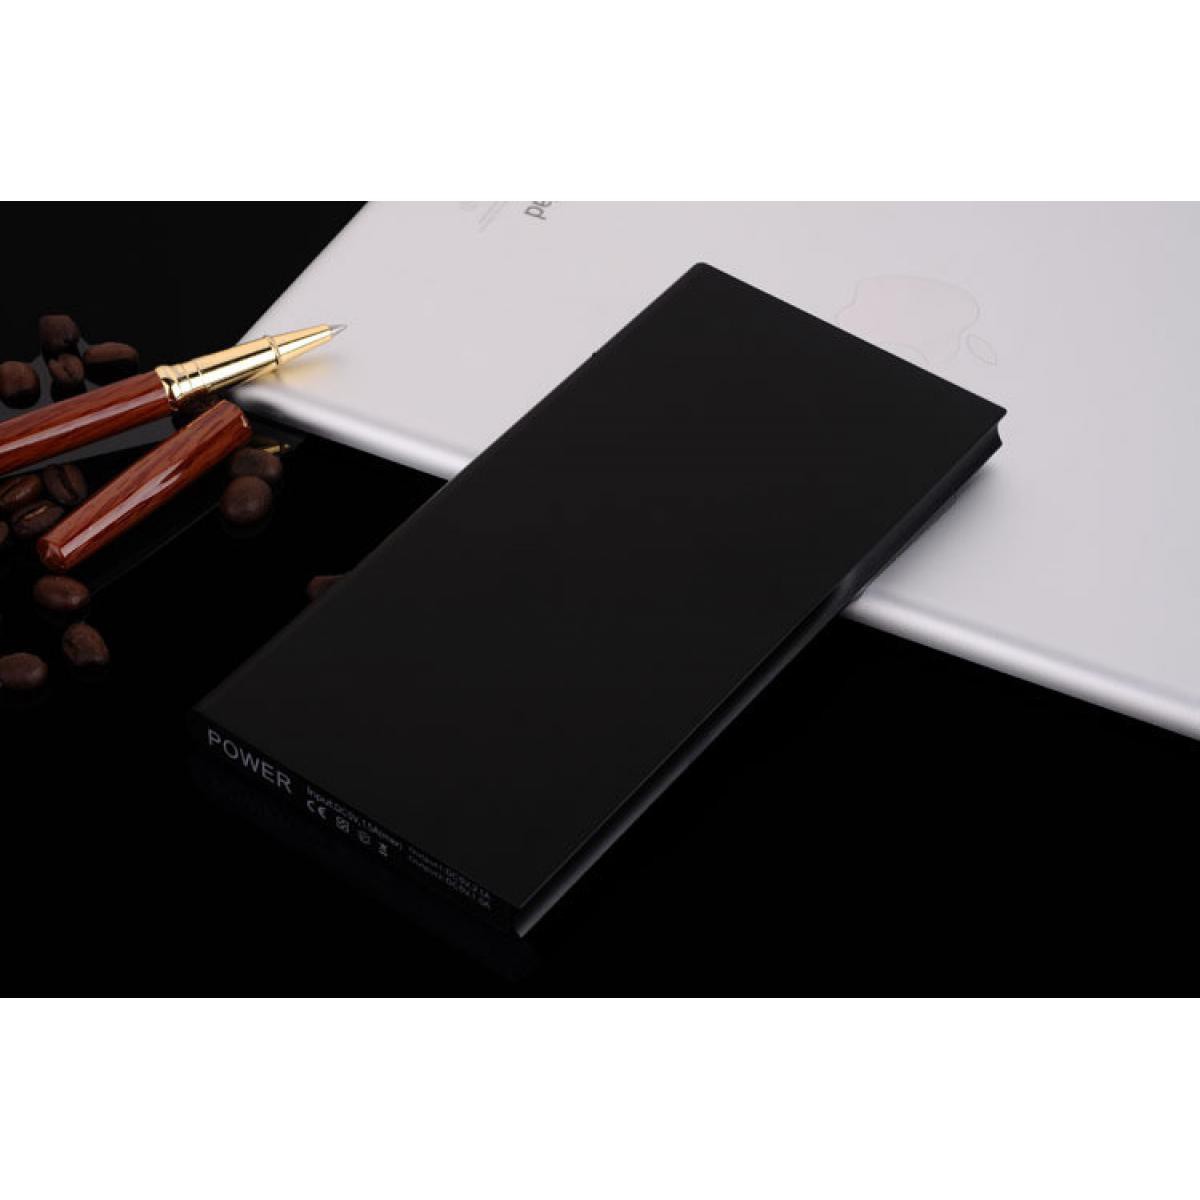 Shot - Batterie Externe Plate pour CROSSCALL TREKKER-X4 Smartphone Tablette Chargeur Power Bank 6000mAh 2 Port USB (NOIR) - Chargeur secteur téléphone